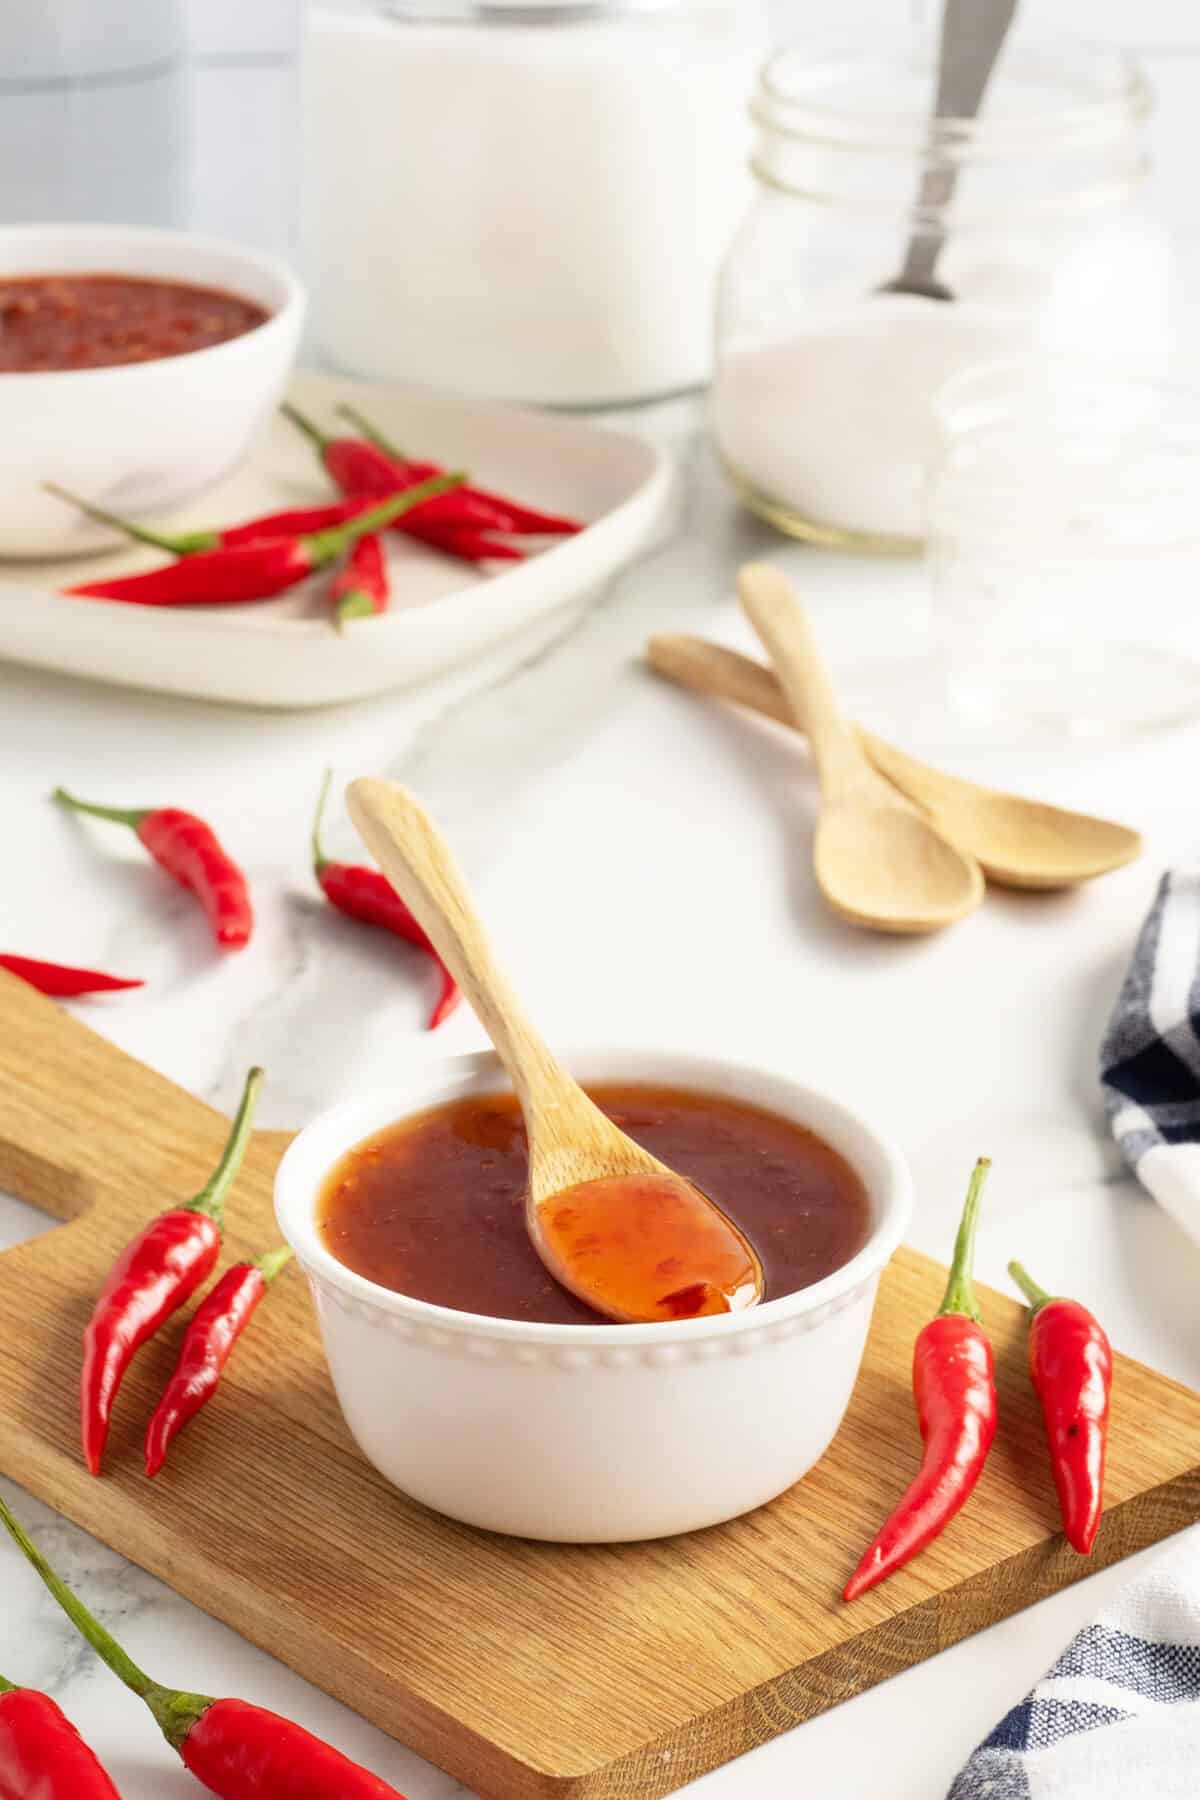 sweet chili sauce in a white ramekin with spoon